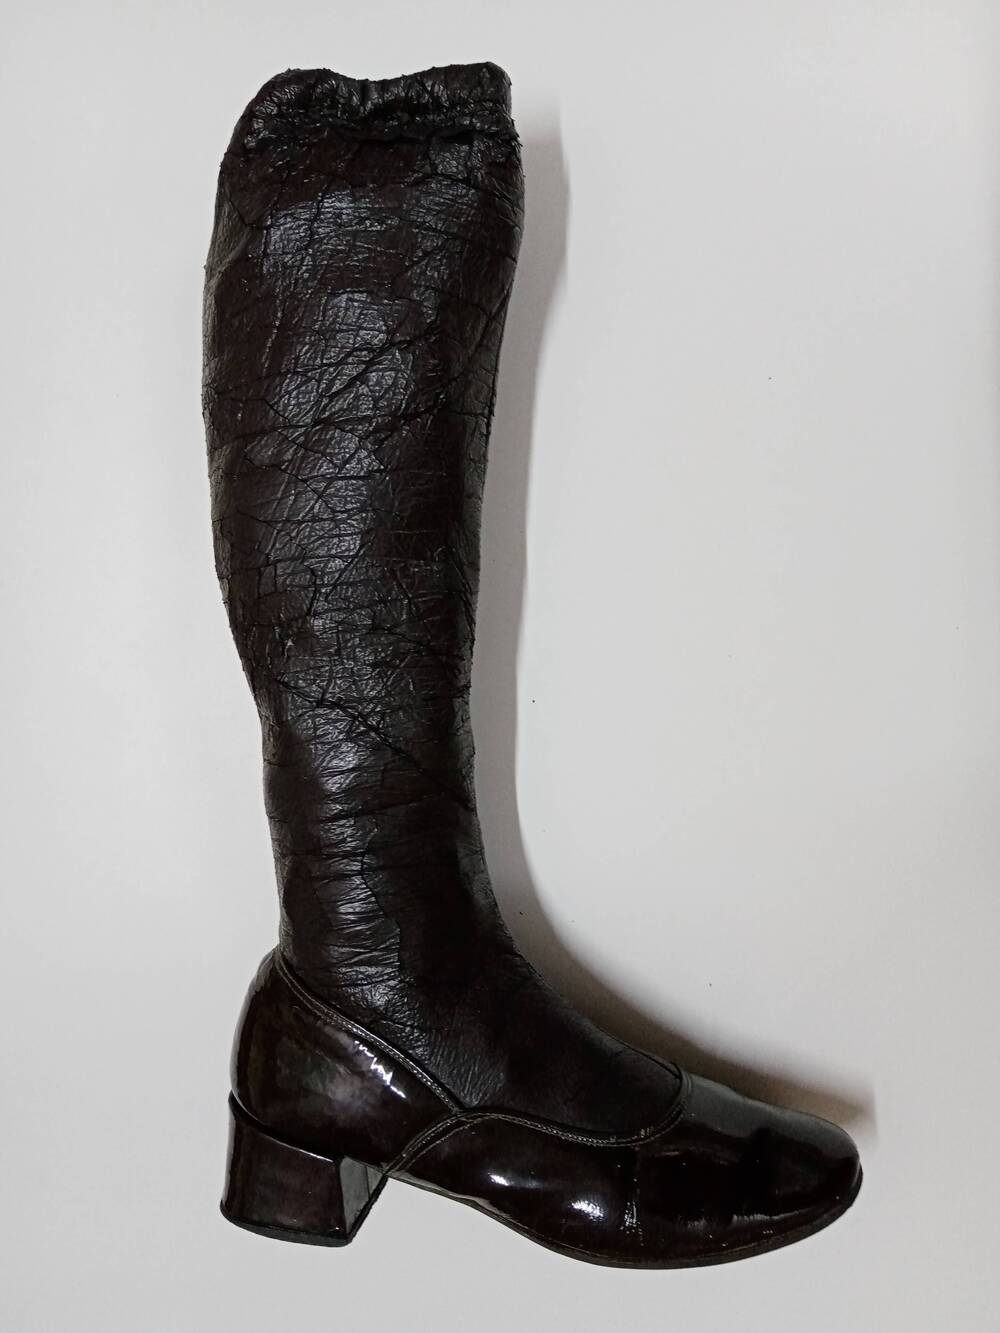 Сапог-чулок, правый, тёмно-коричневый, с широким средним каблуком. Середина 1970-х гг.